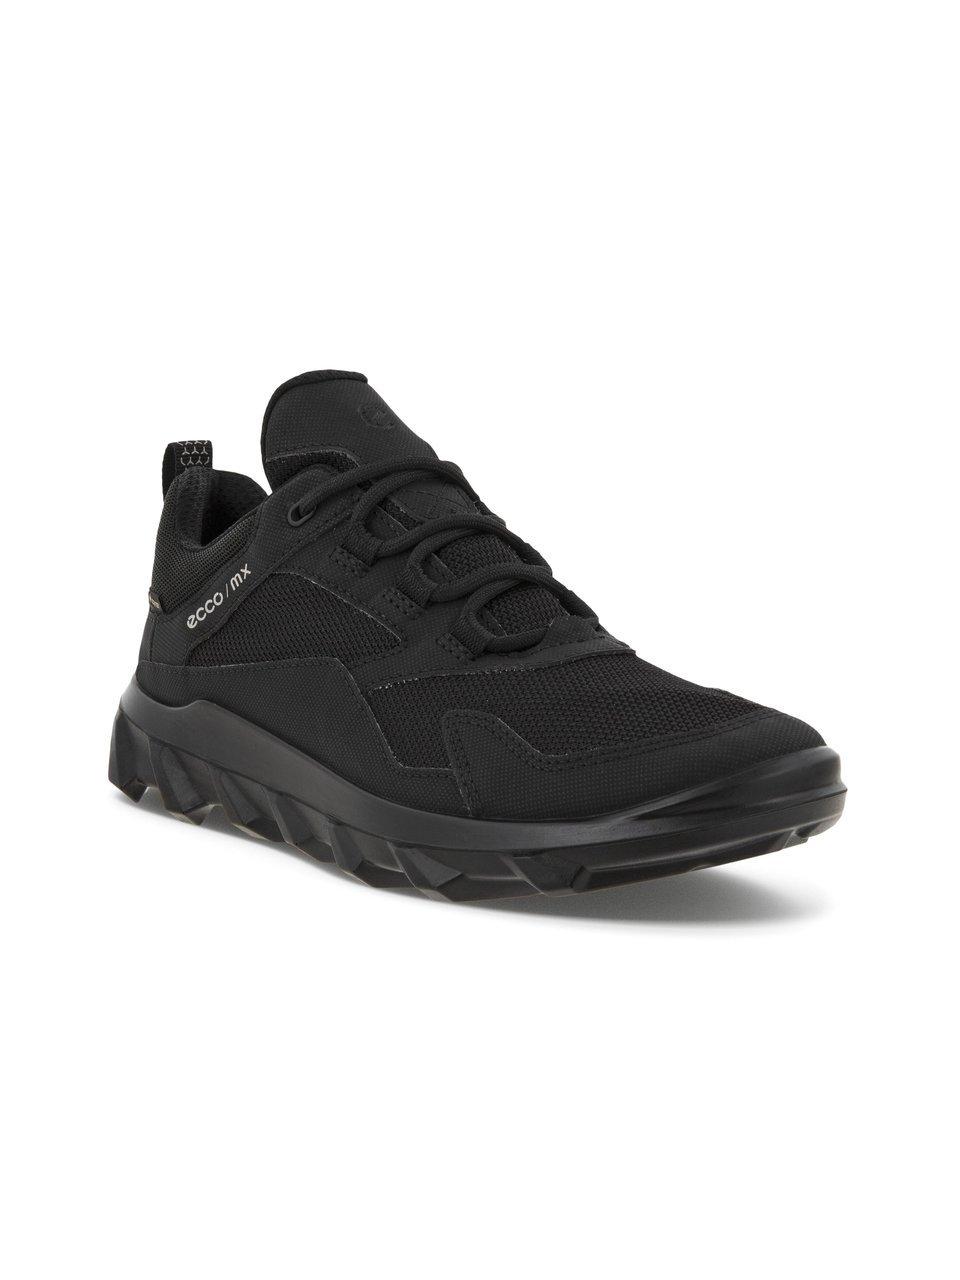 Ecco MX low GTX Sneakers zwart Synthetisch - Dames - Maat 40